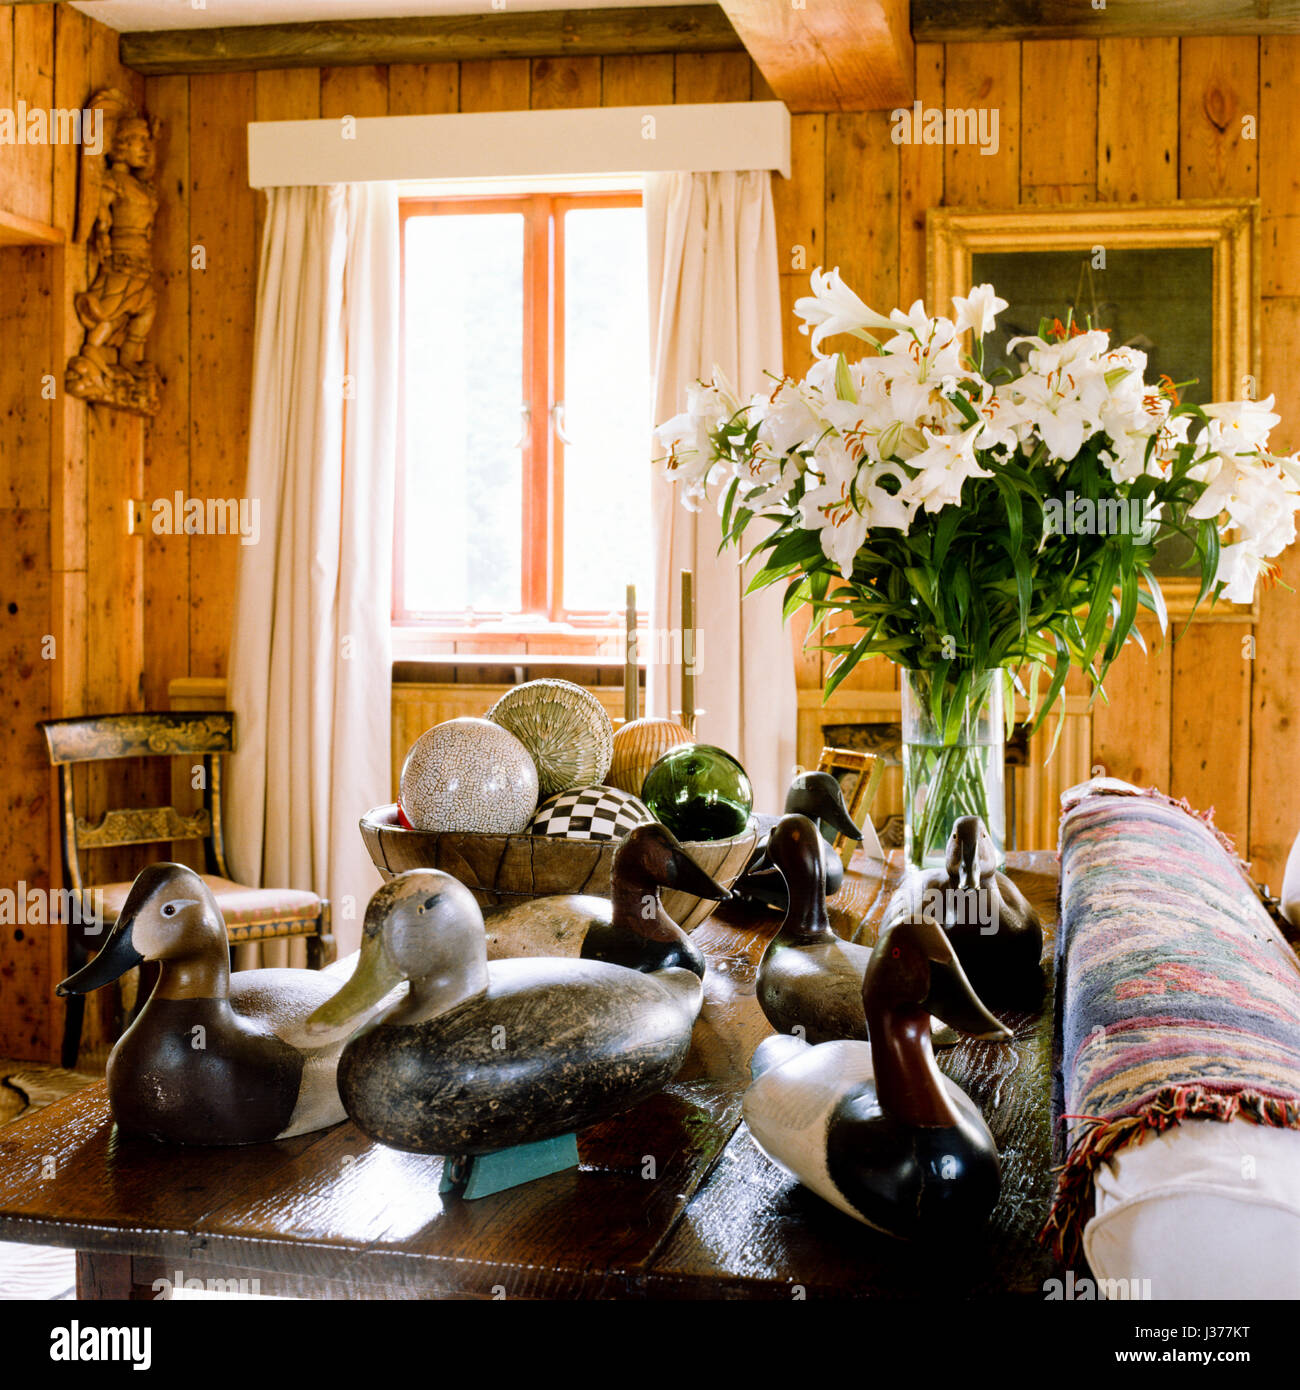 Sammlung von Ente Ornamente auf Tisch im rustikalen Wohnzimmer. Stockfoto